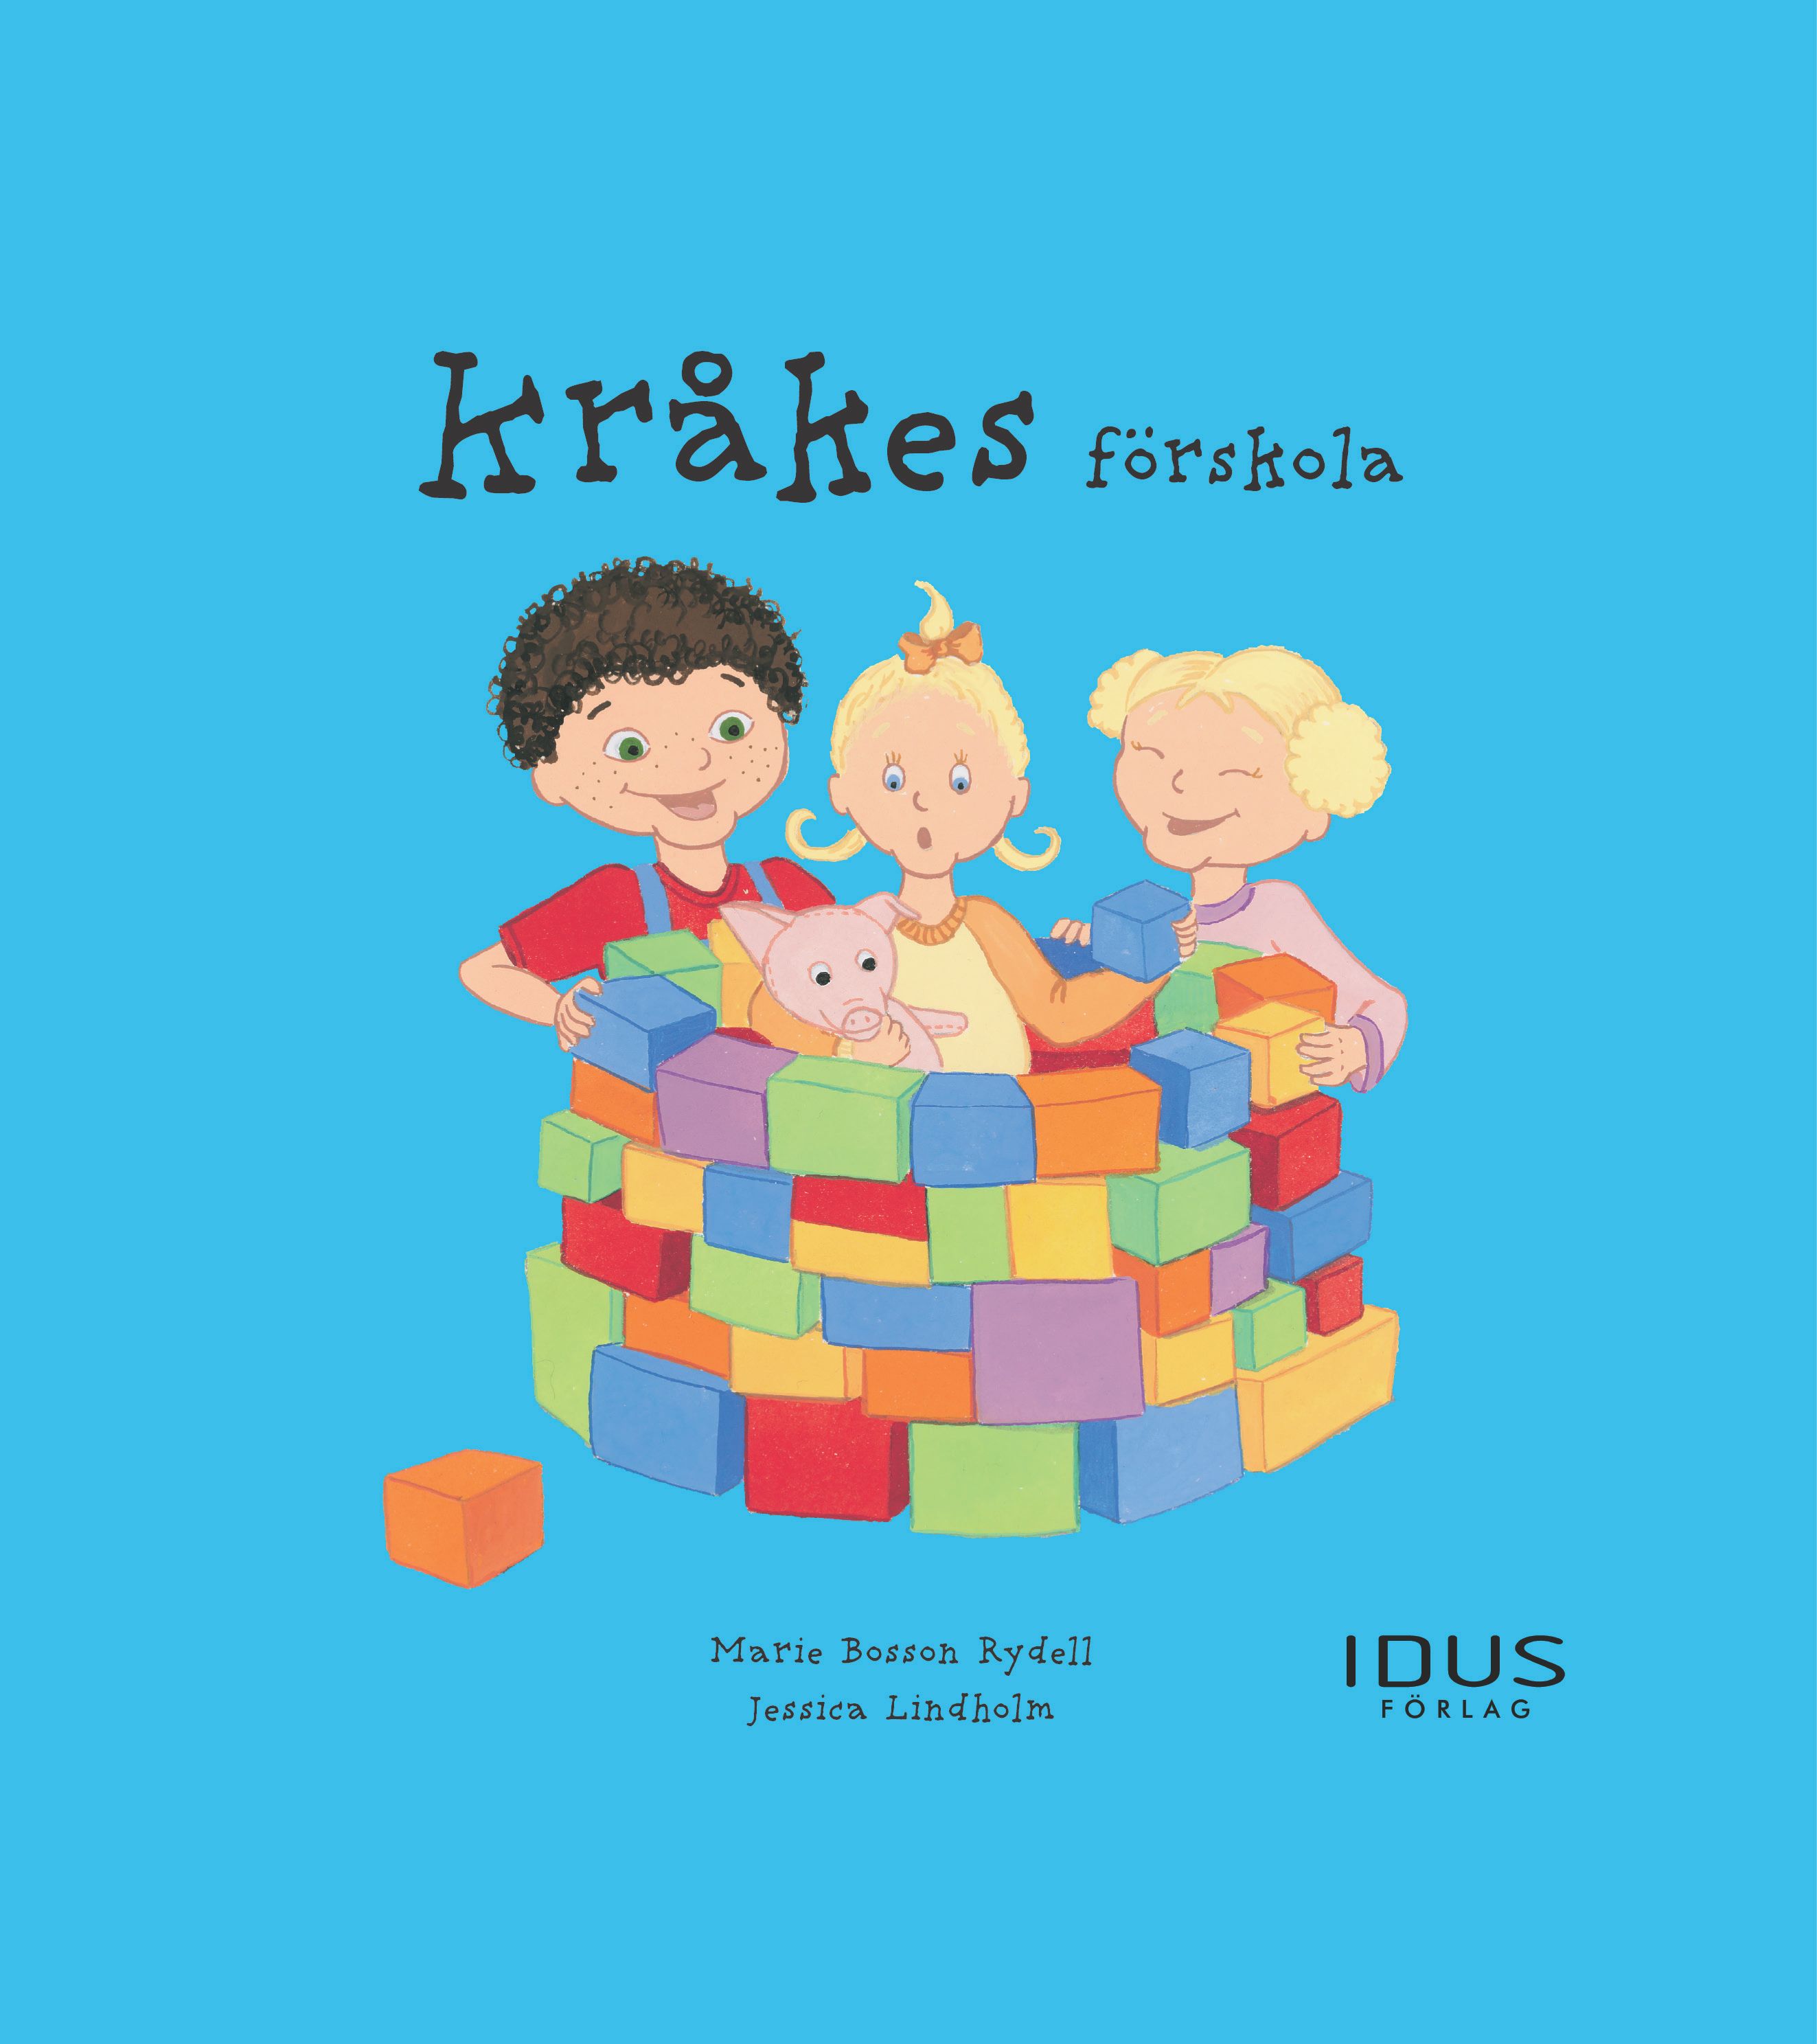 Kråkes förskola, eBook by Marie Bosson Rydell